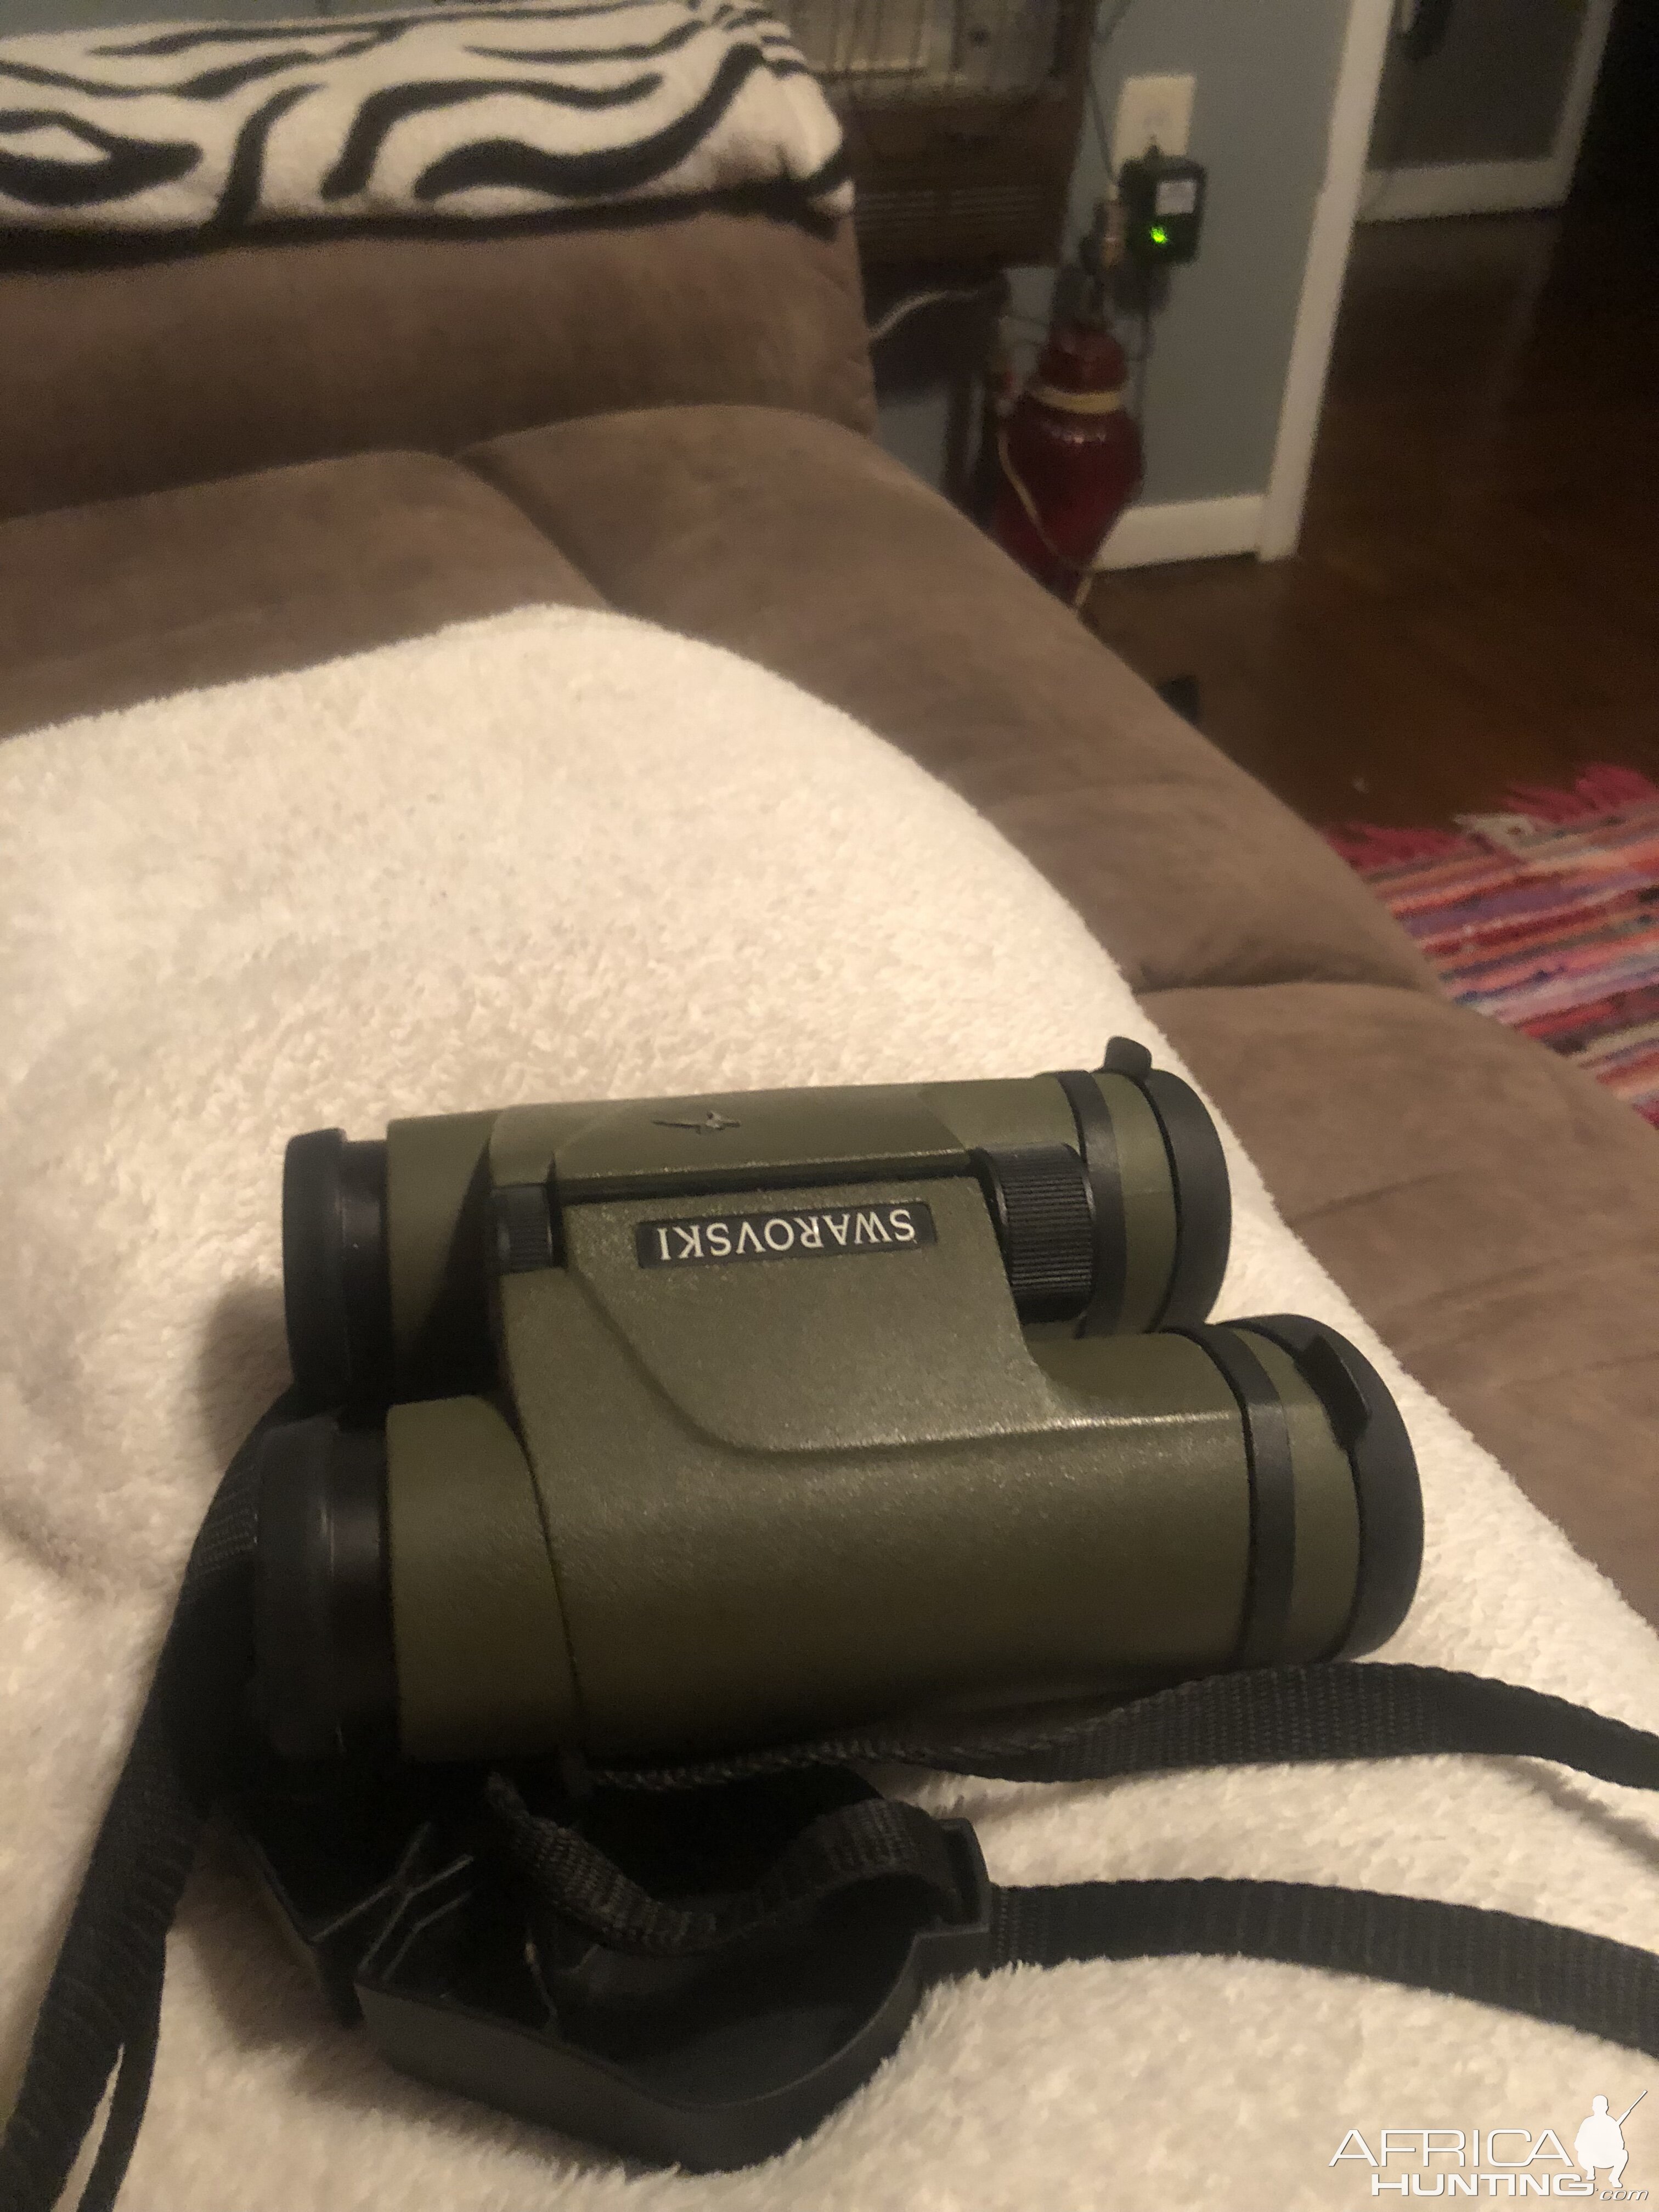 Swarovski 8x30 Binoculars